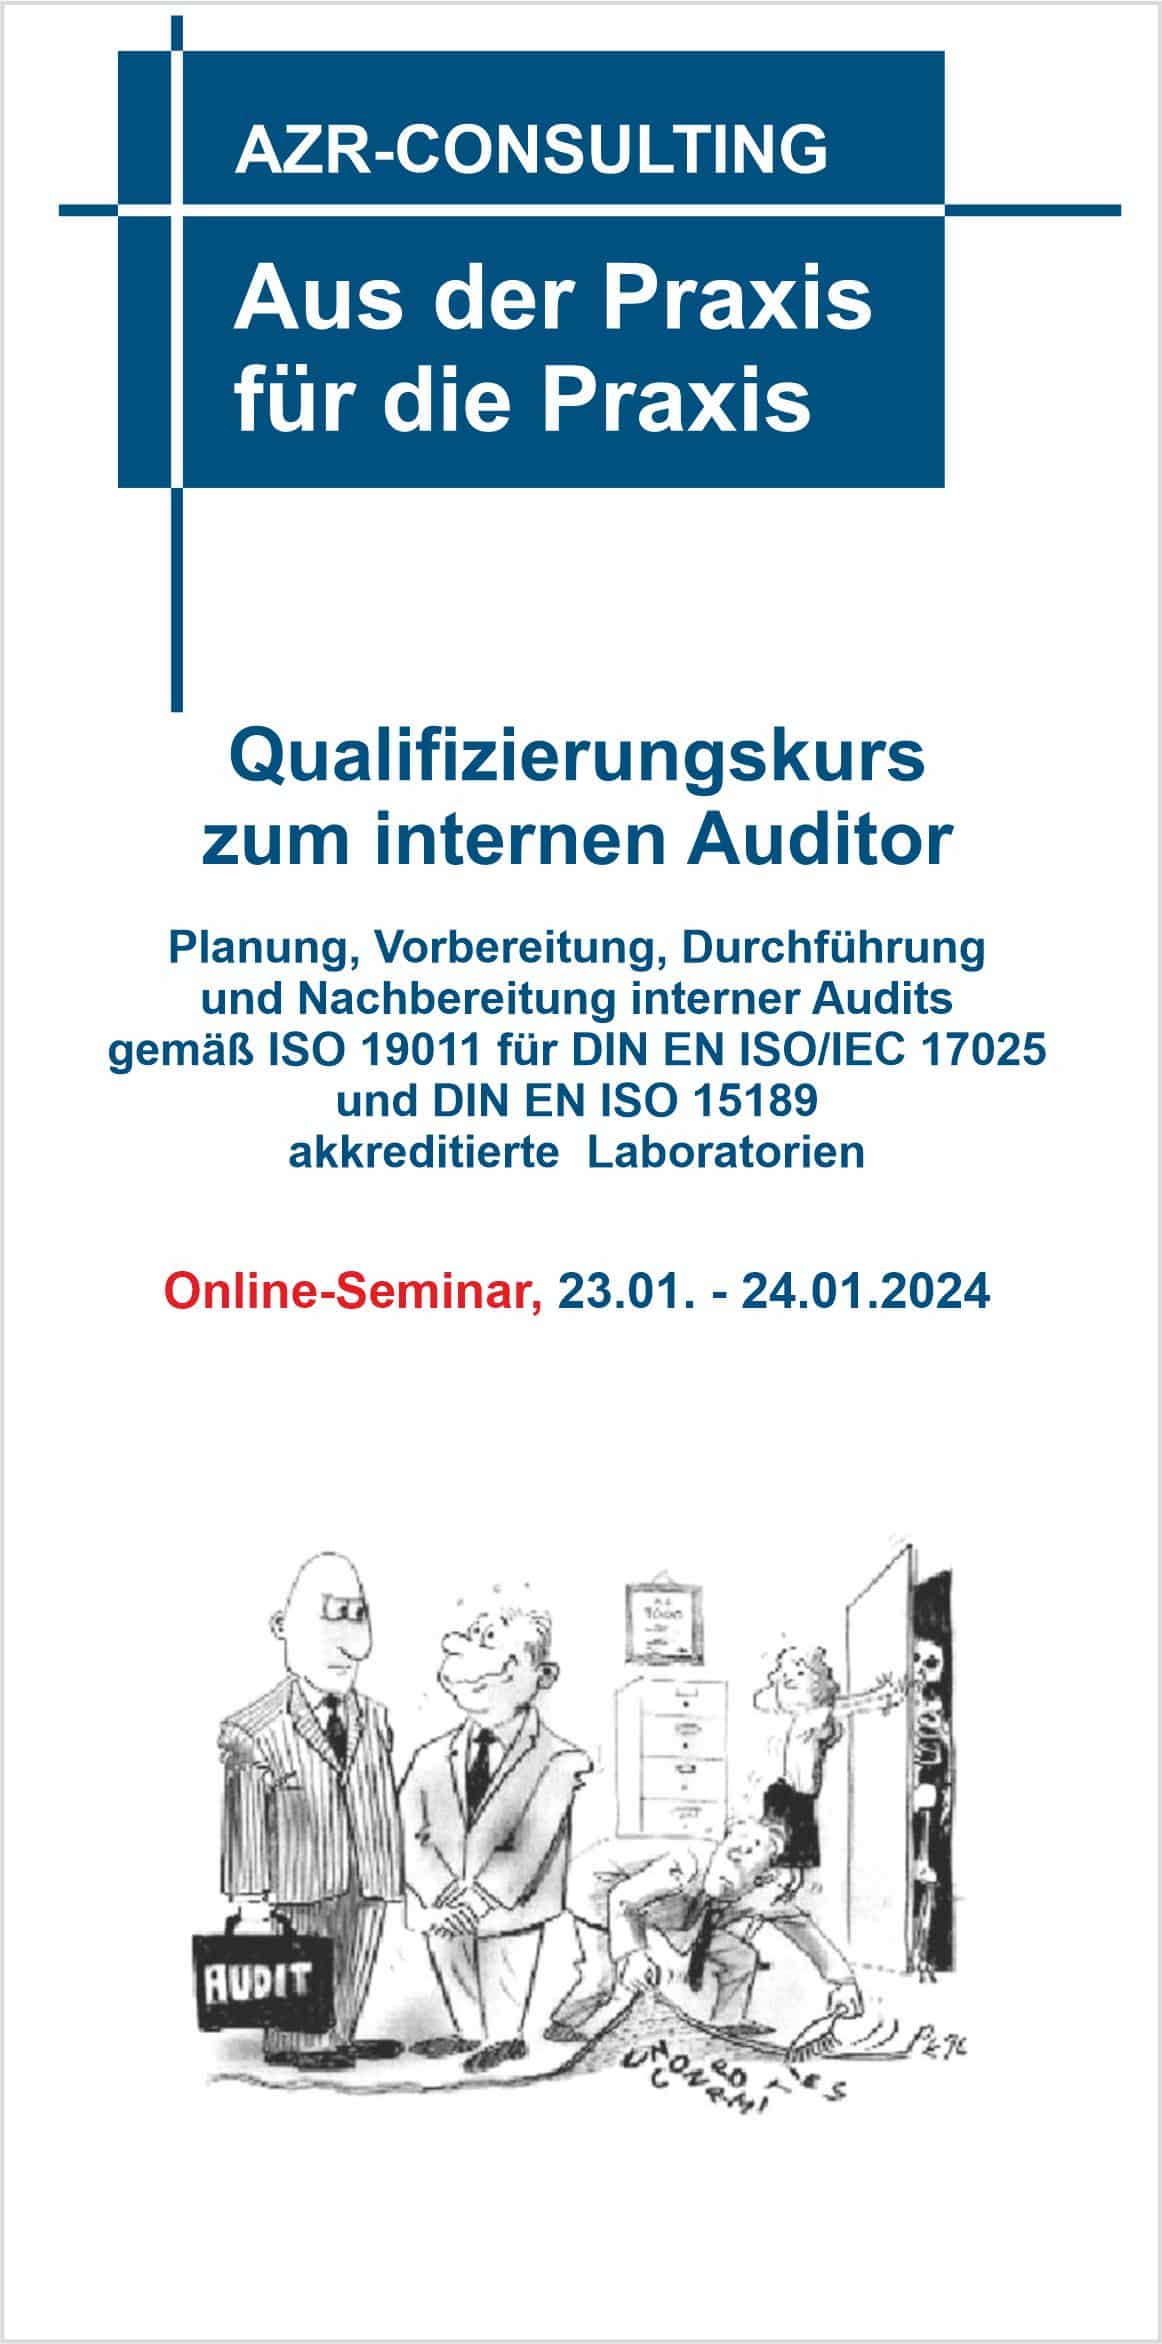 Qualifizierungskurs zum internen Auditor